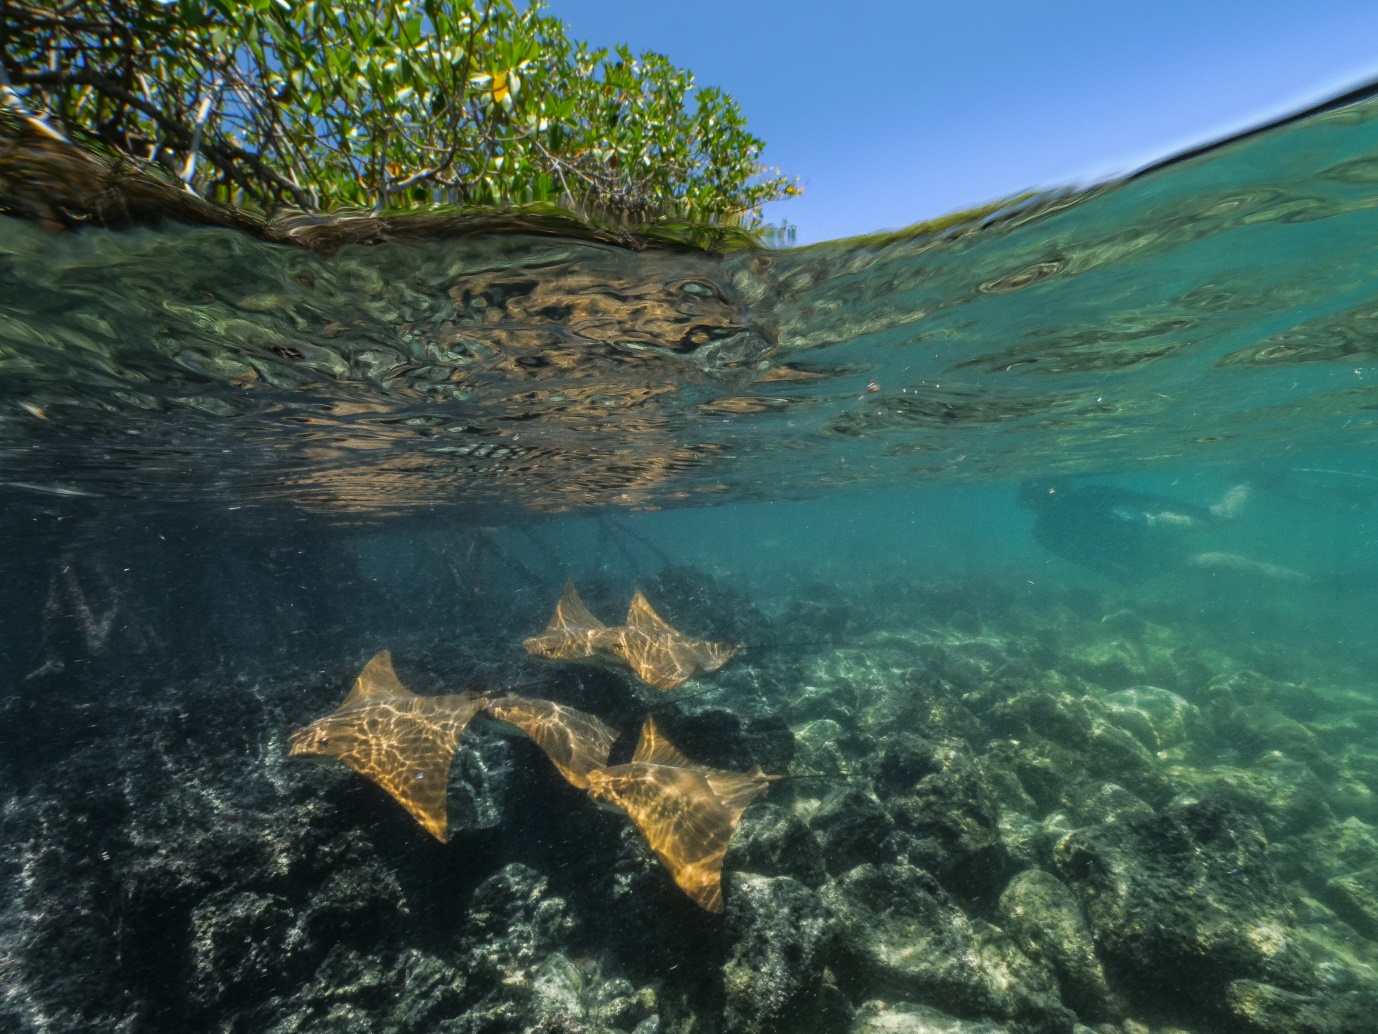 Figura 5. Snorkeling con rayas doradas en las bahías con manglar. Foto: Pelayo Salinas de León / Fundación Charles Darwin